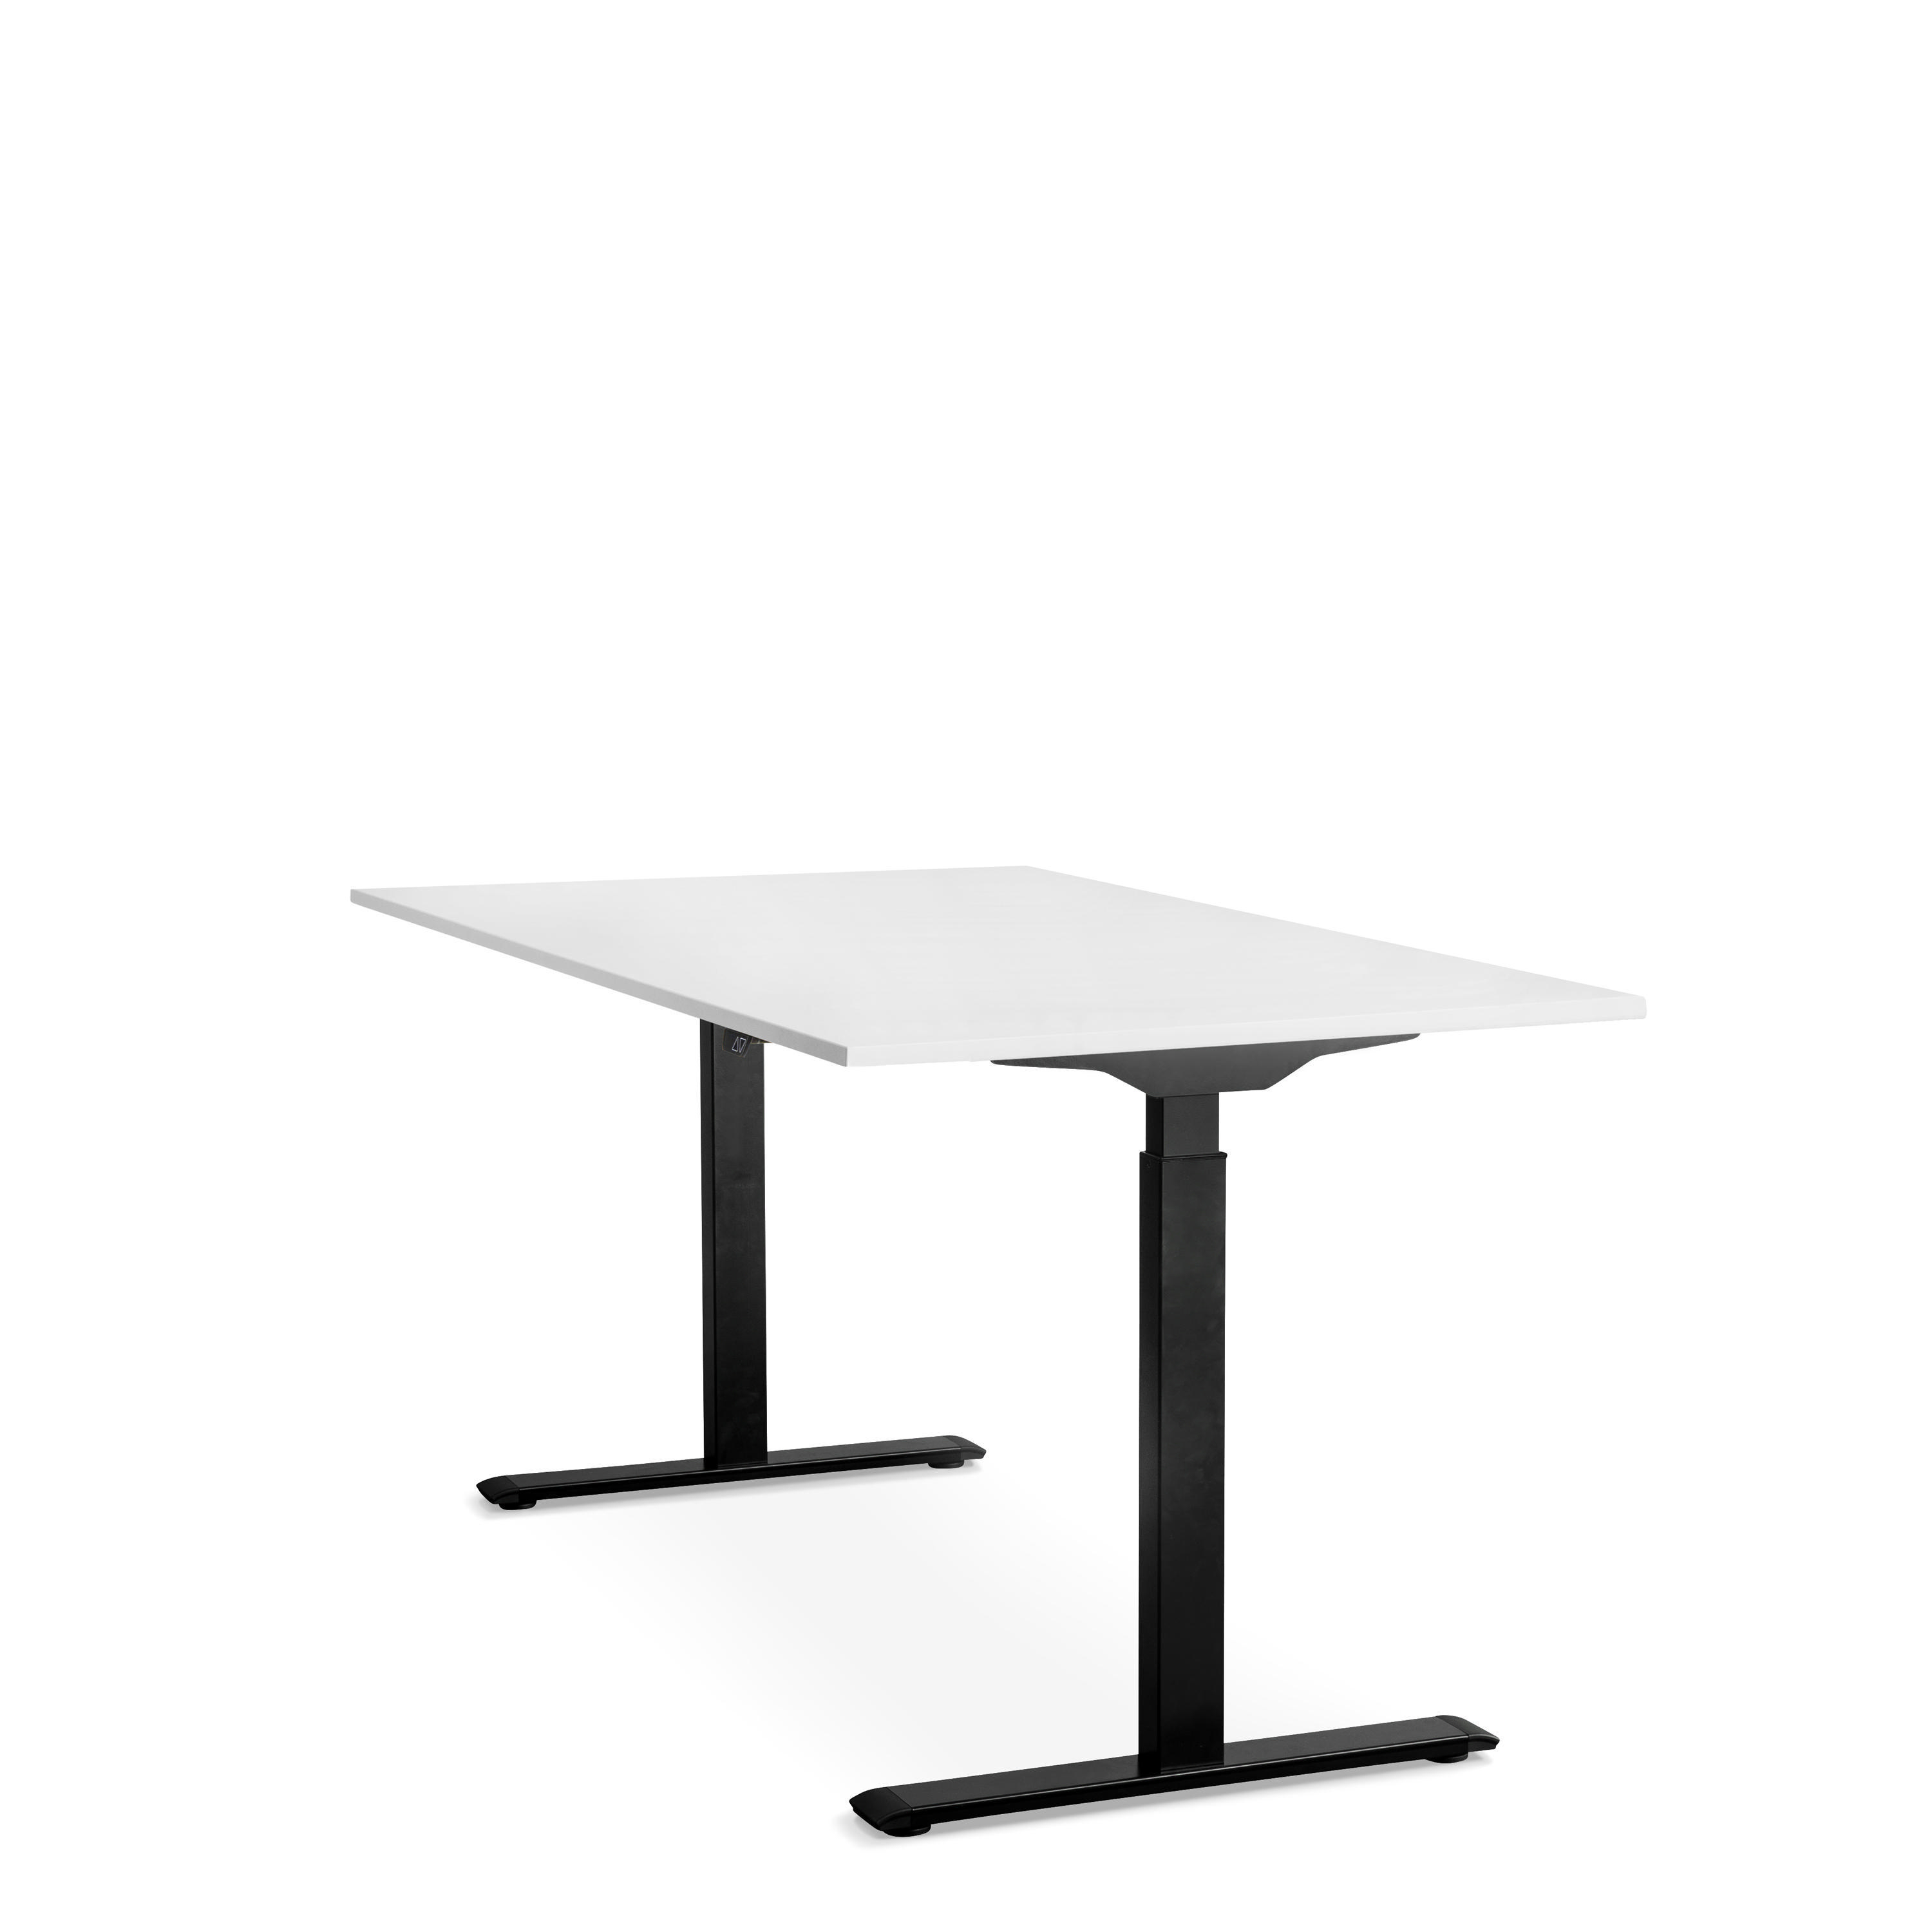 160x80 cm Tischgestell: Steh-Sitz höhenverstellbarer Schwarz Schreibtisch, WRK21 Weiß Tischplatte: elektronisch